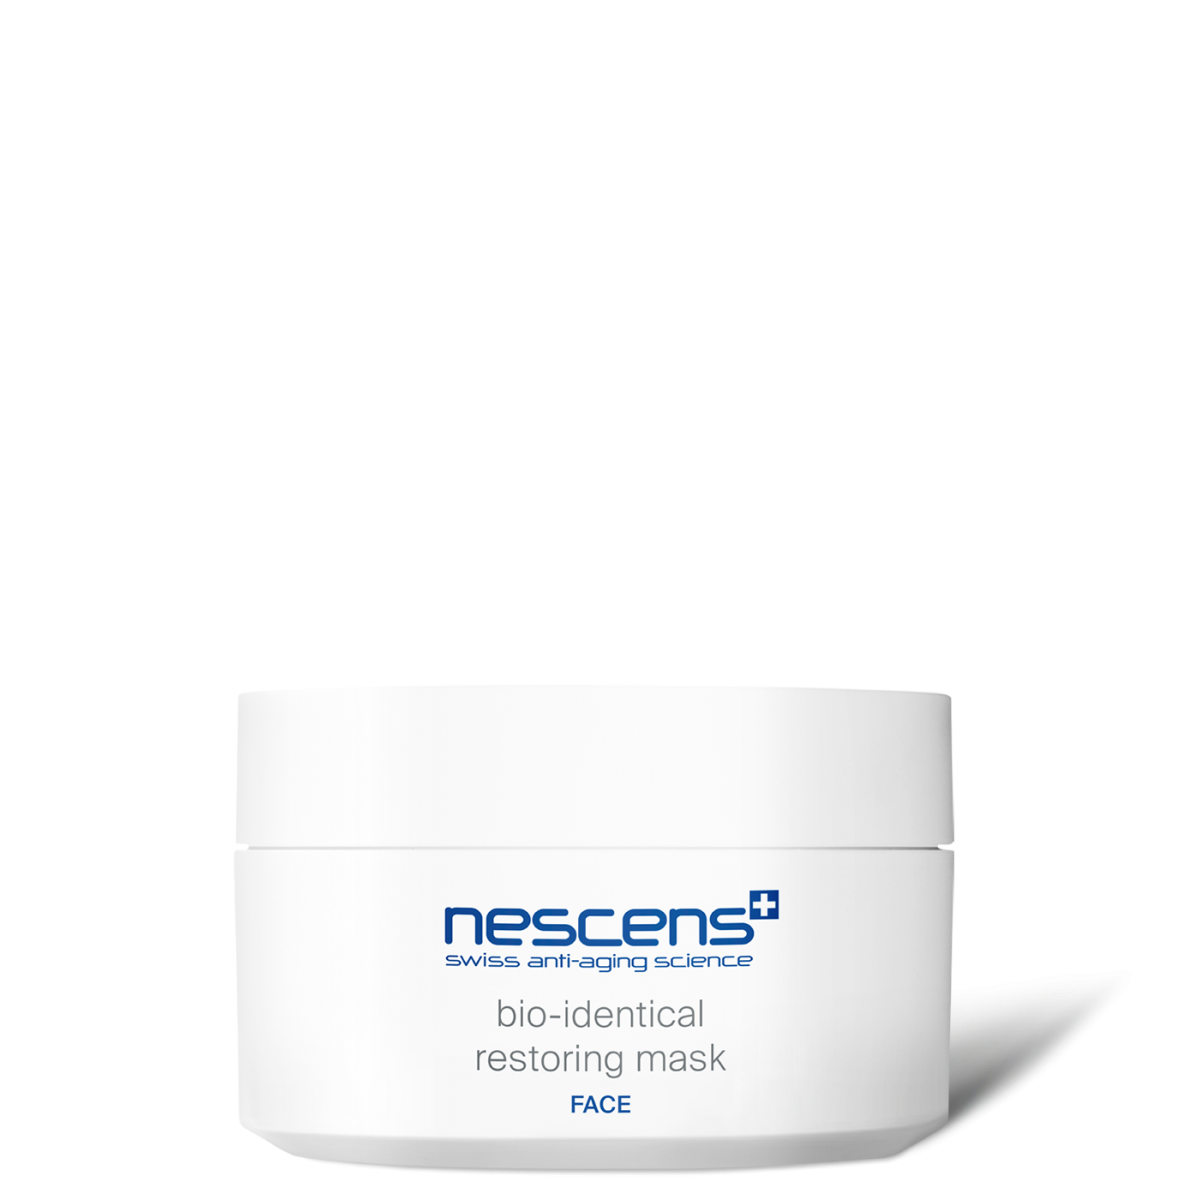 Nescens - Bio-identical restoring mask - Bioidentische Restoring Maske